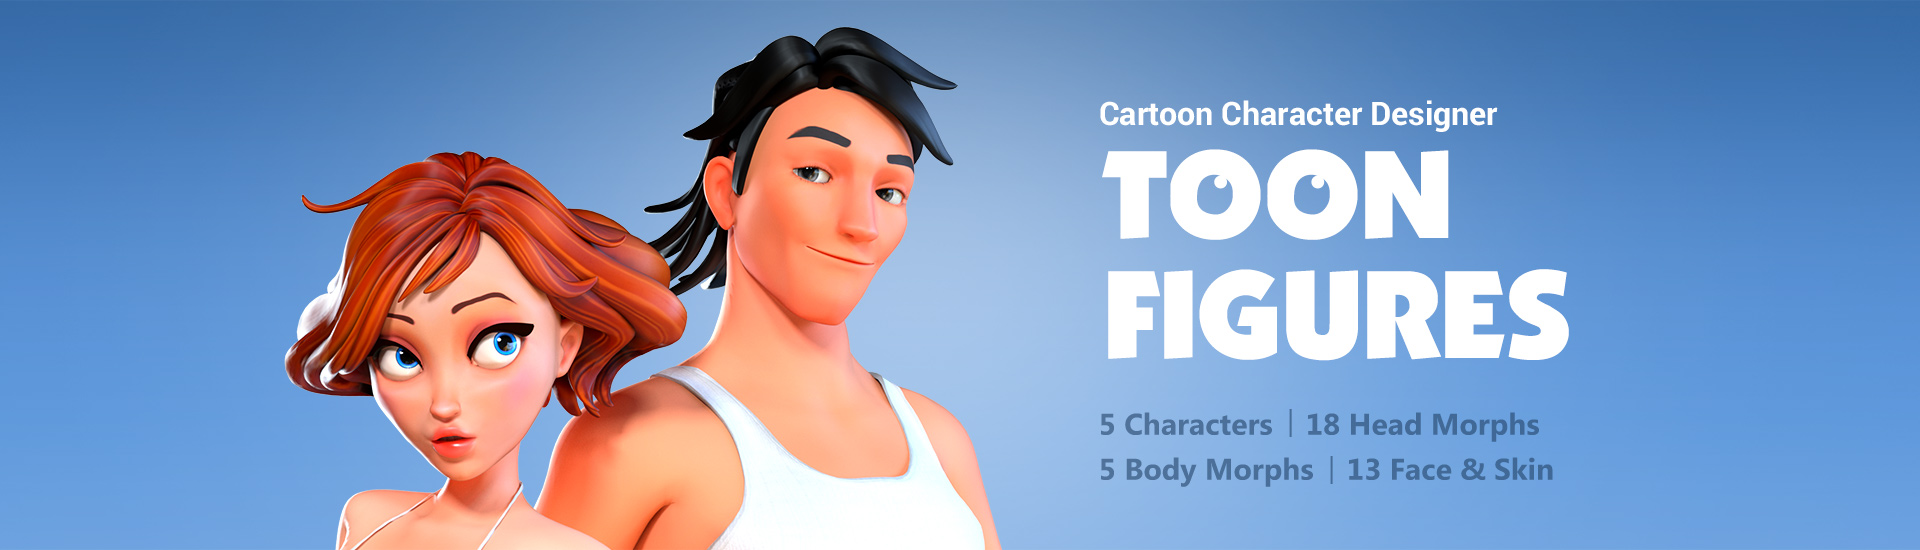 Cartoon Character Designer - Toon Figures